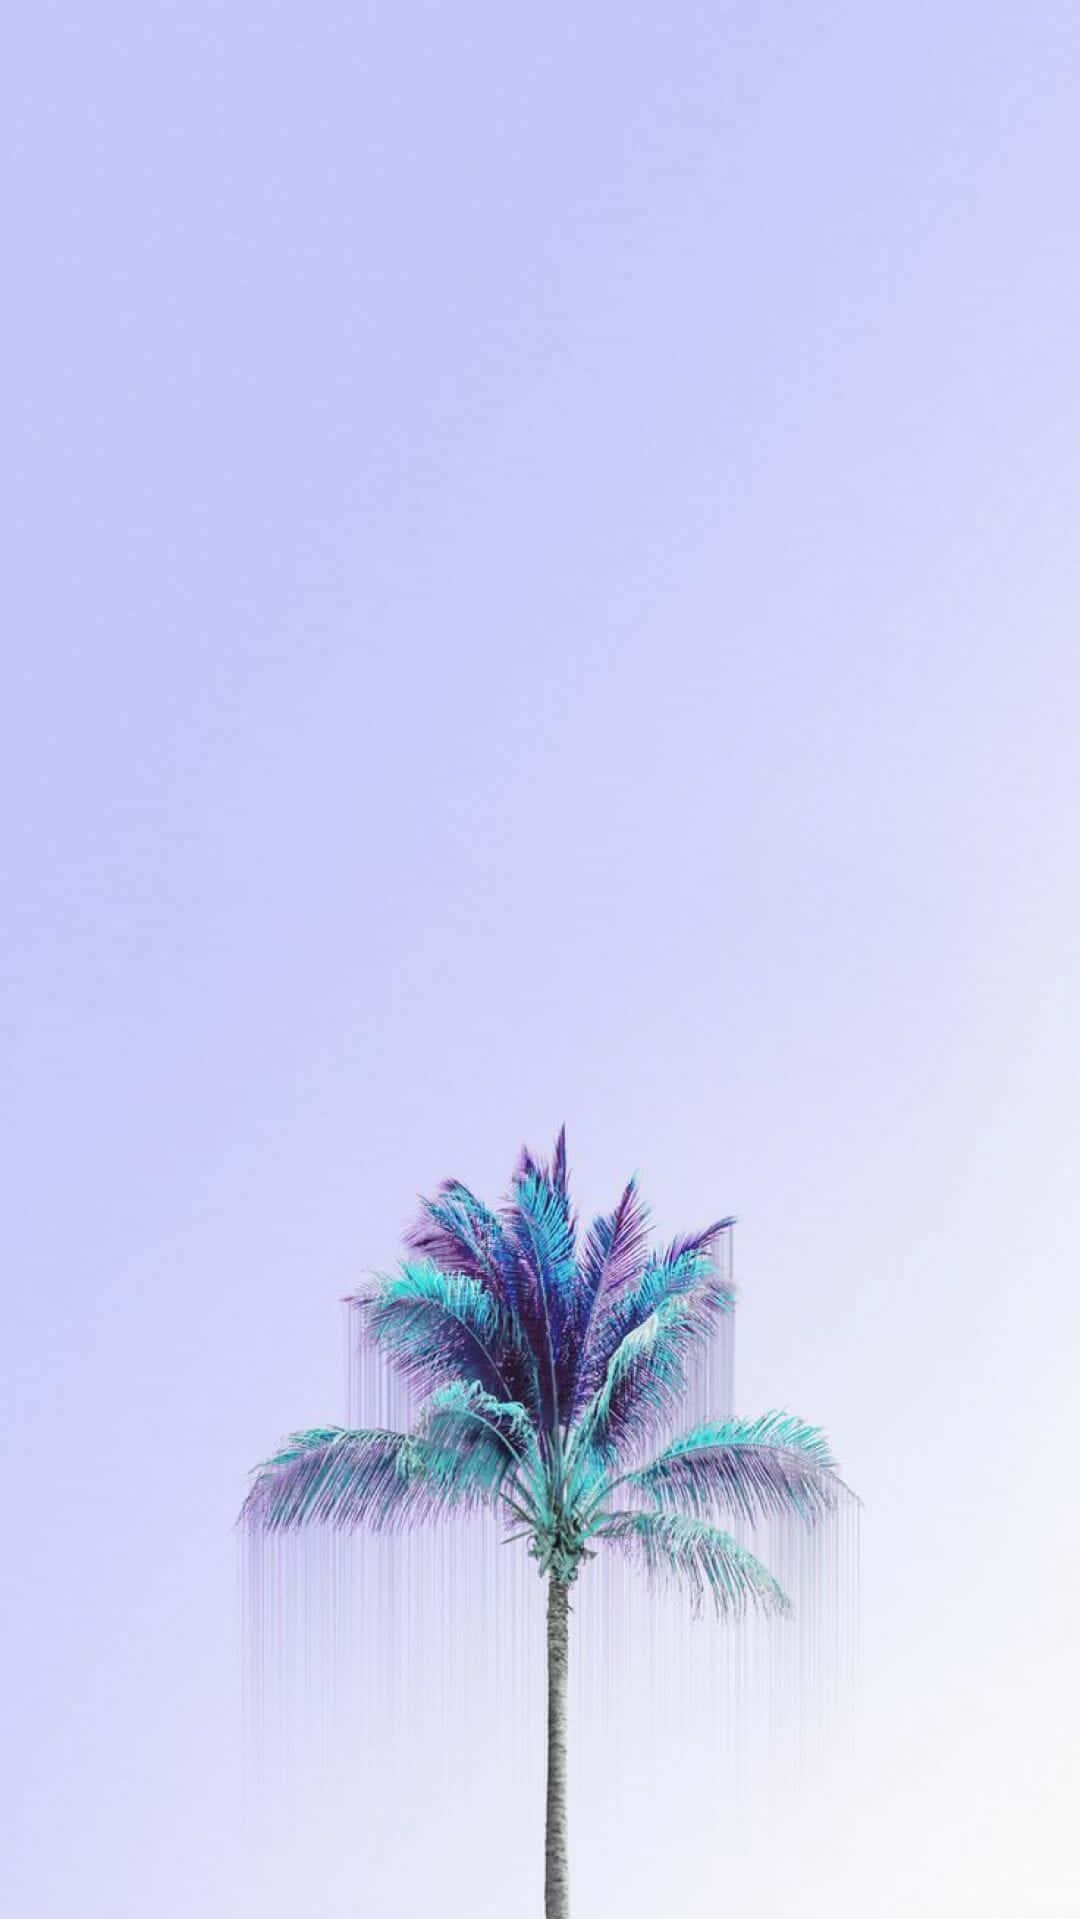 Et palme træ i en blå himmel tapet Wallpaper